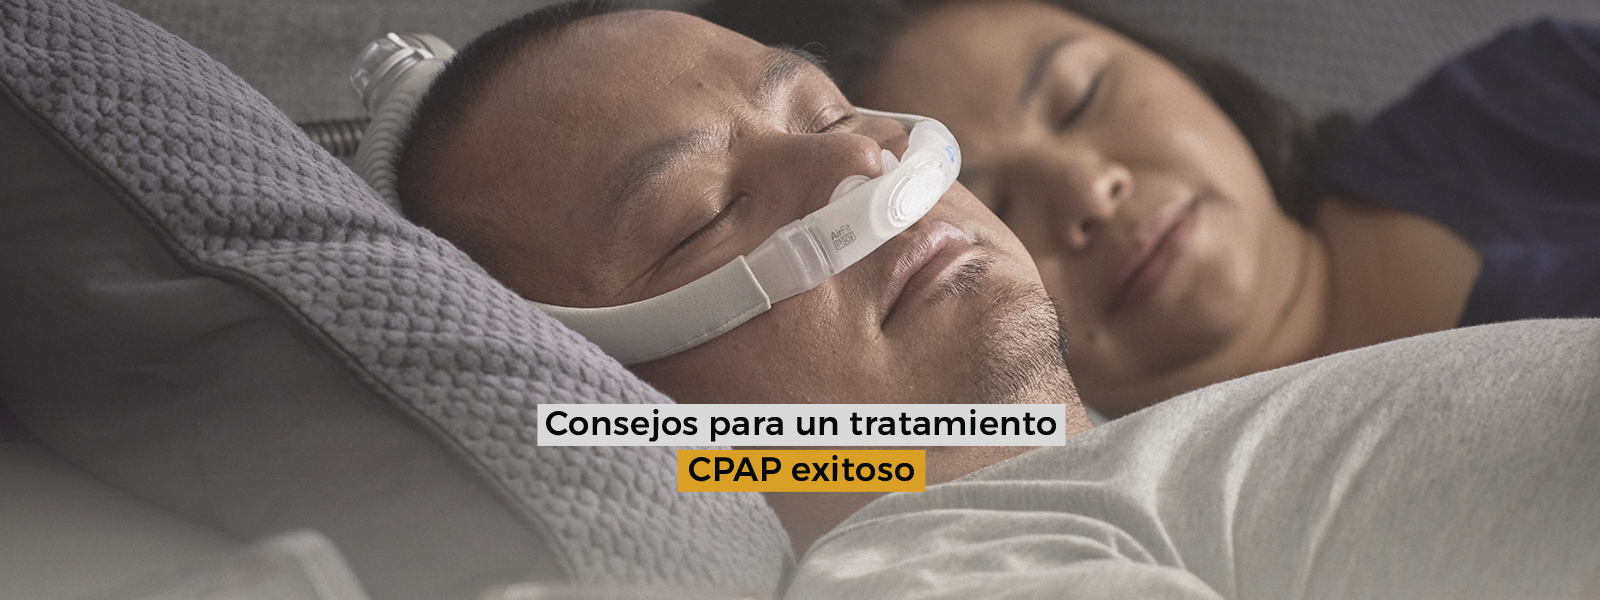 Consejos para un tratamiento CPAP exitoso